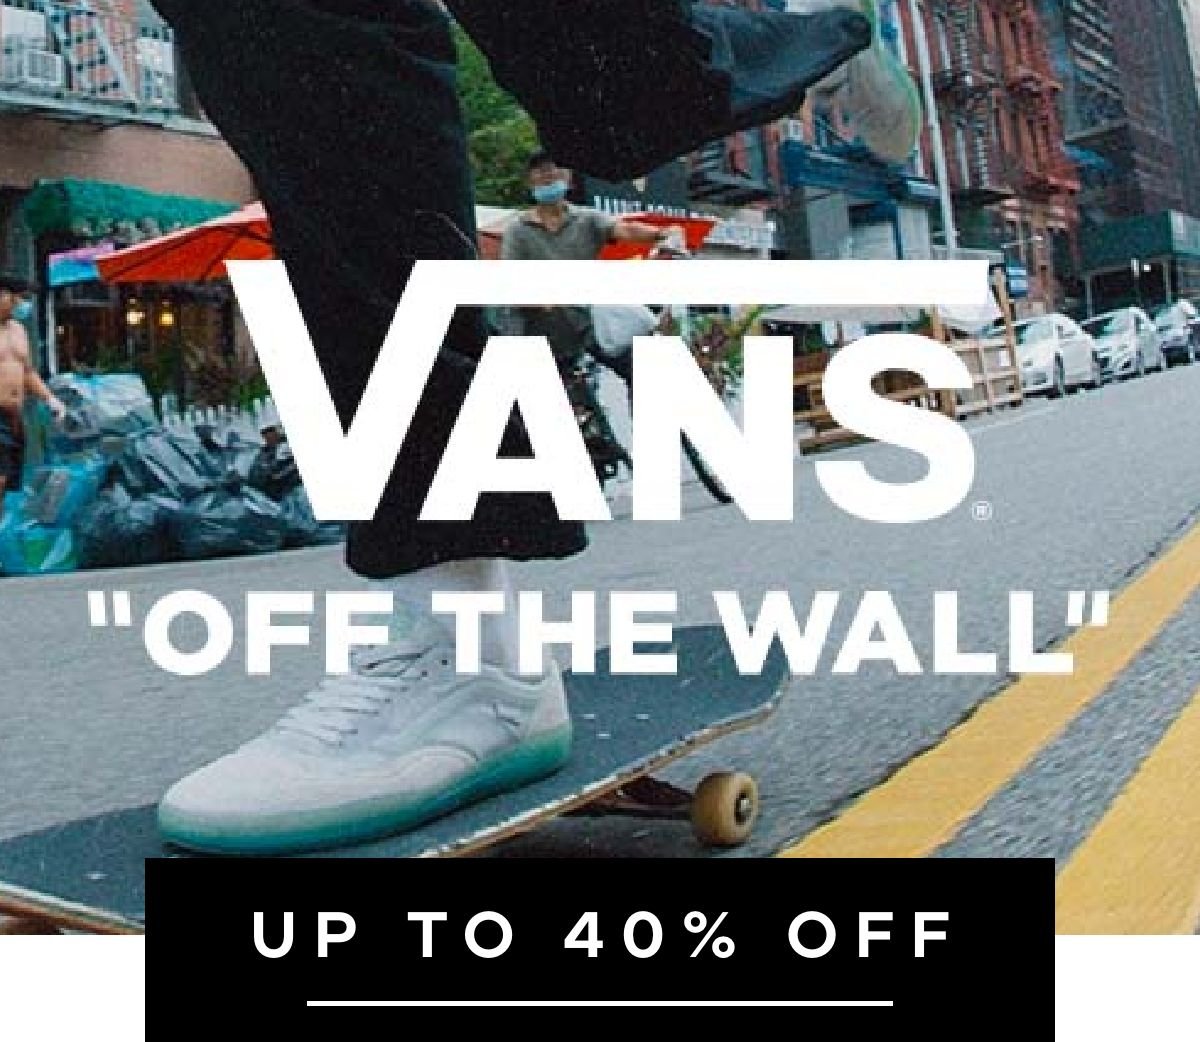 Up to 40% off Vans